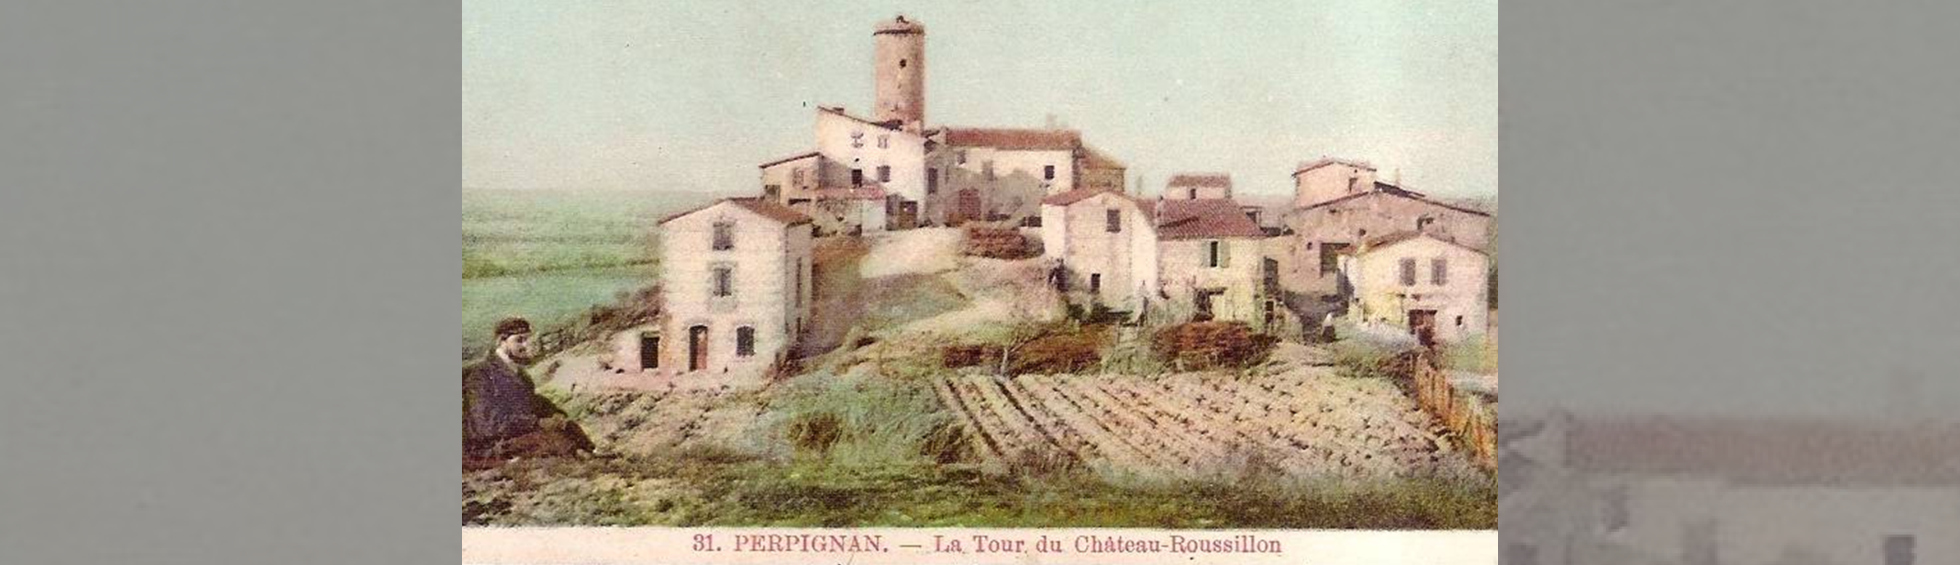 hameau de chateau roussillon: vue des maisons, champs et tour circulaire qui dominent la plaine